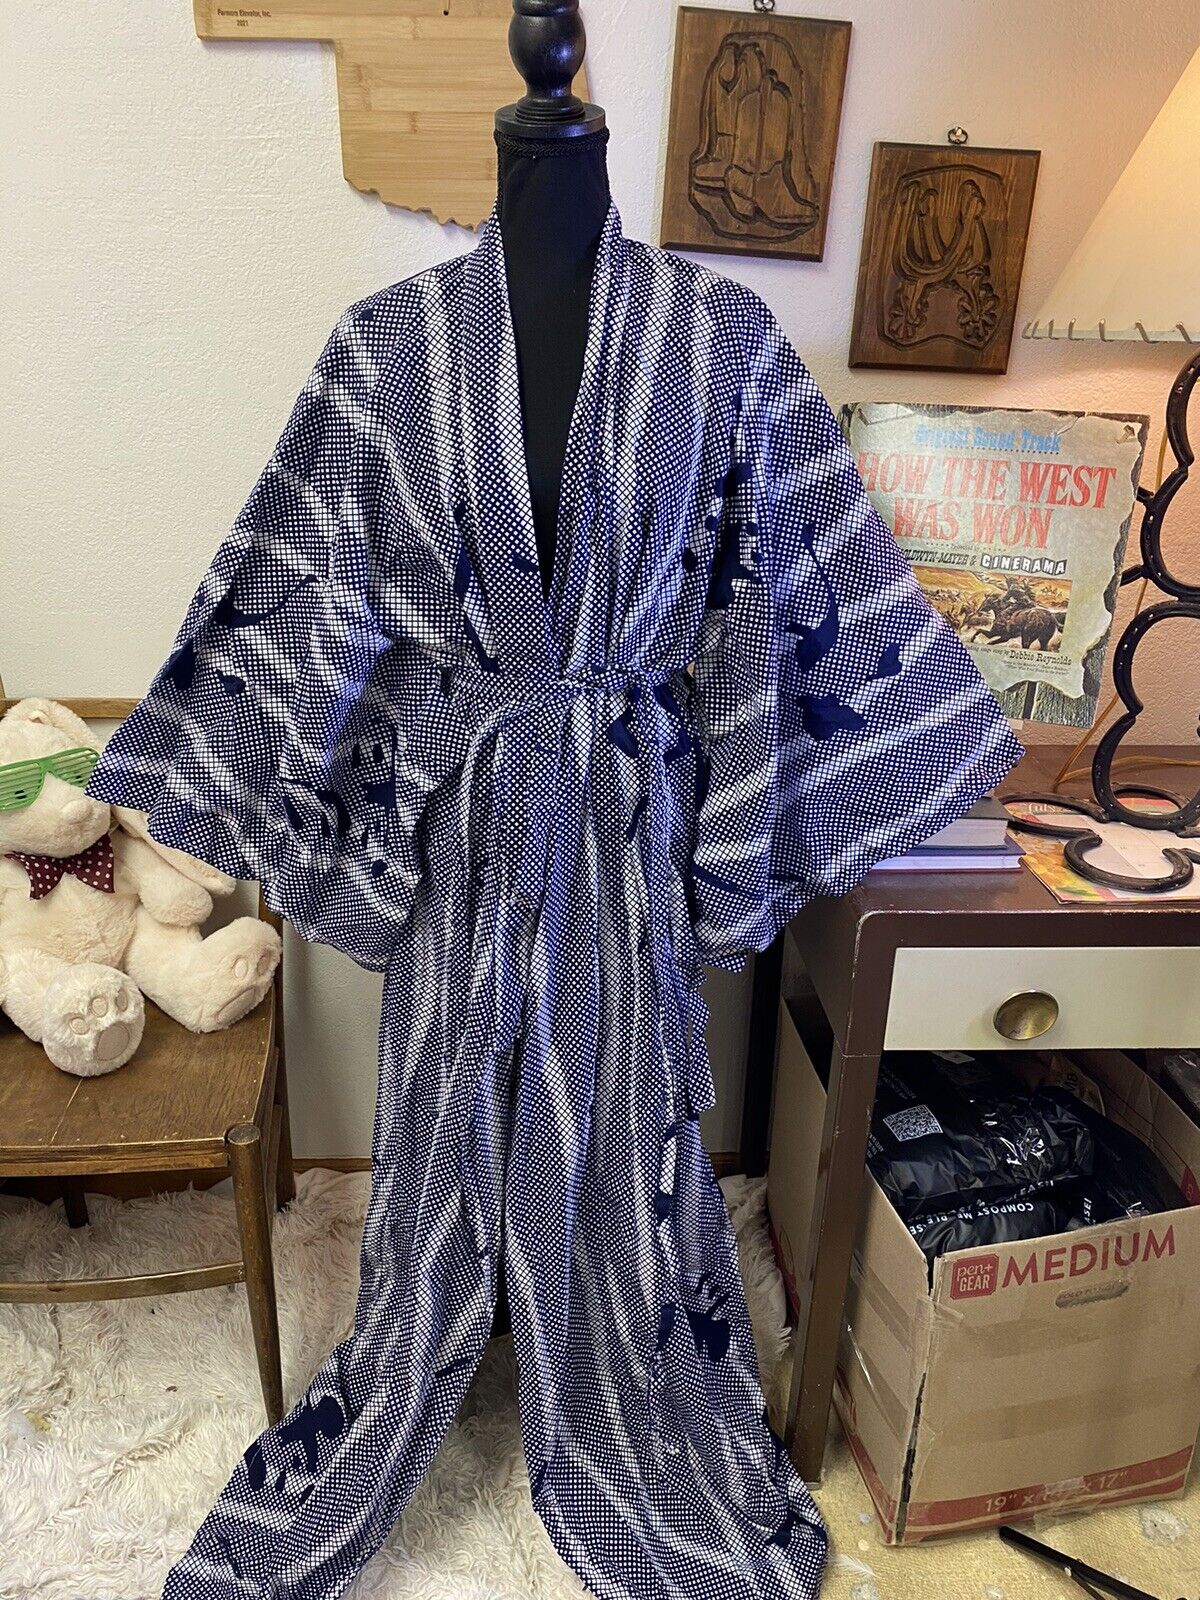 FP in Tokyo Vintage One Size Navy White Kanji Print 100% Cotton Robe Kimono 64”